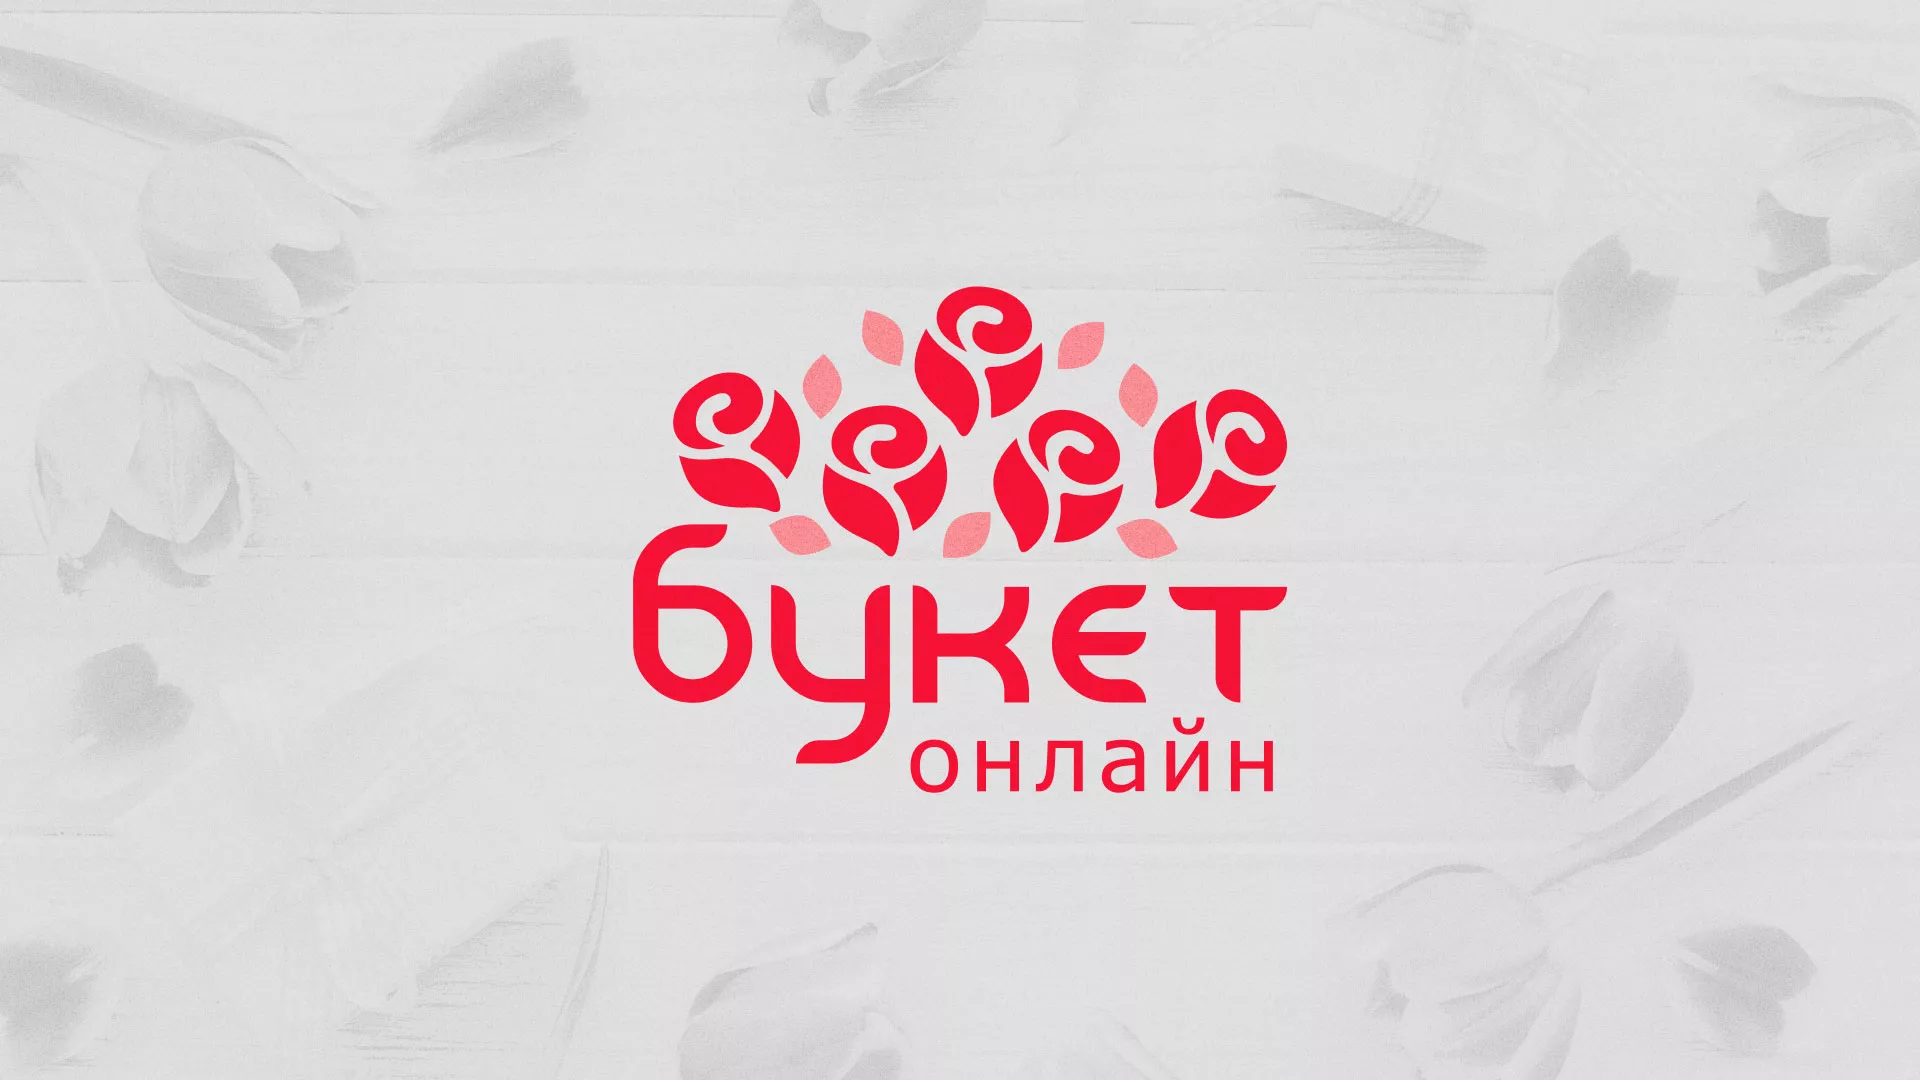 Создание интернет-магазина «Букет-онлайн» по цветам в Дедовске